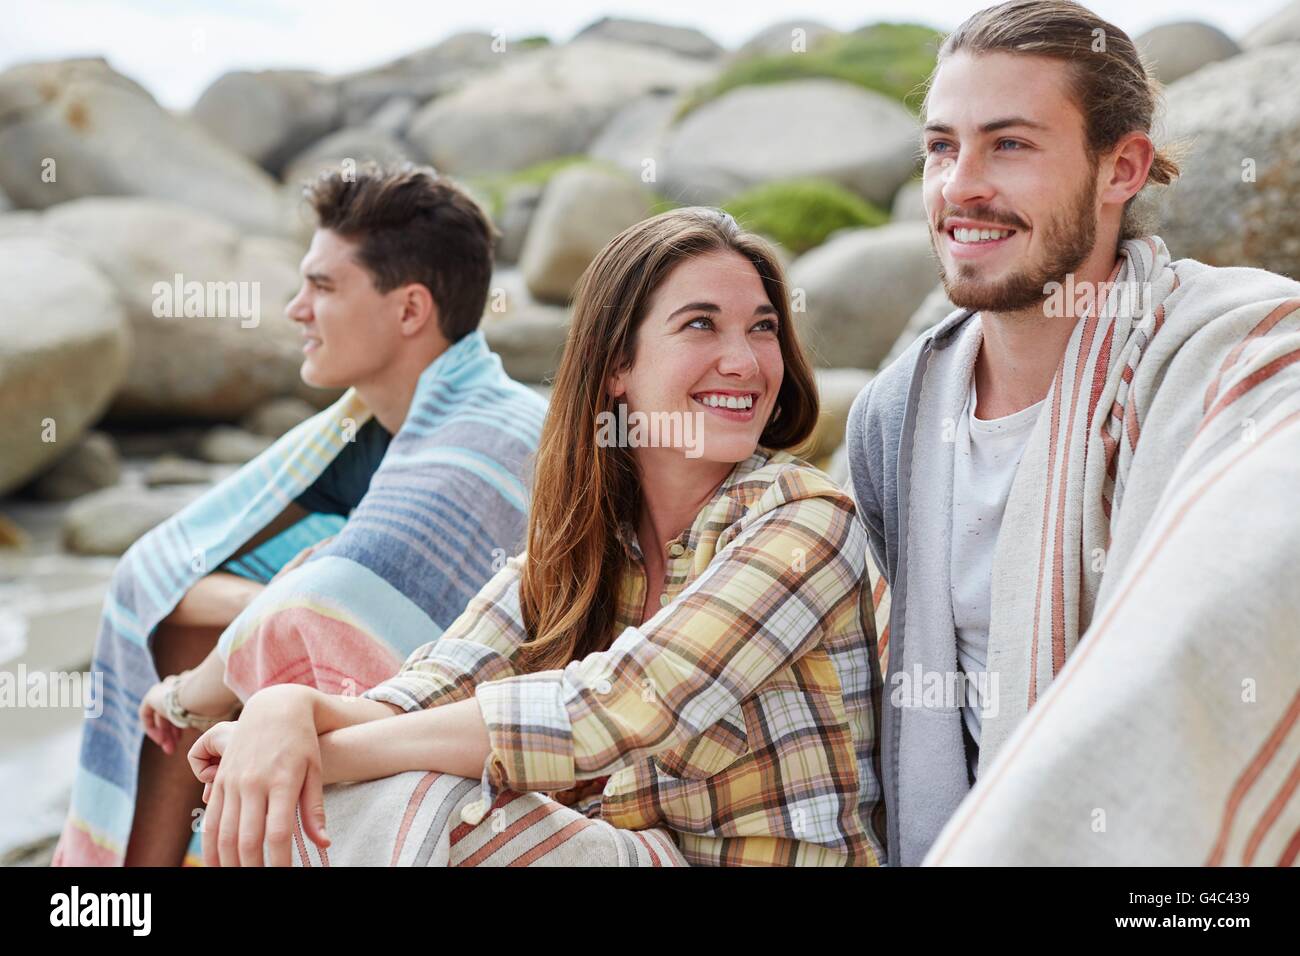 Modelo liberado. Los adultos jóvenes en la playa, envueltos en mantas. Foto de stock